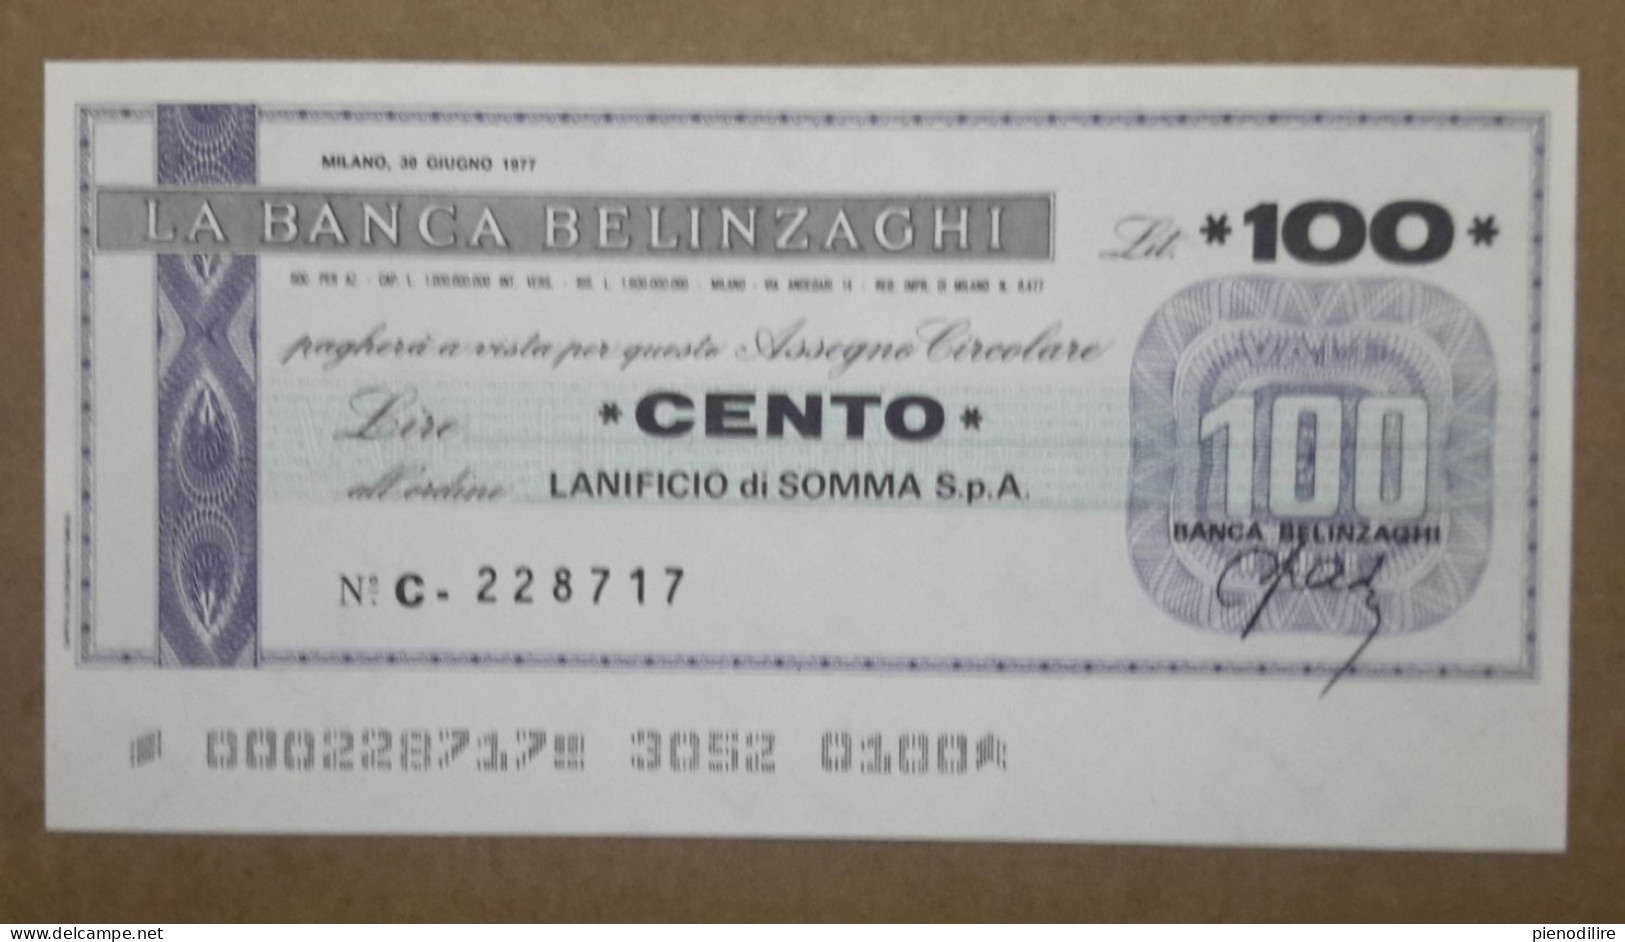 BANCA BELINZAGHI, 100 LIRE 30.06.1977 LANIFICIO SOMMA S.P.A. MILANO (A1.88) - [10] Chèques